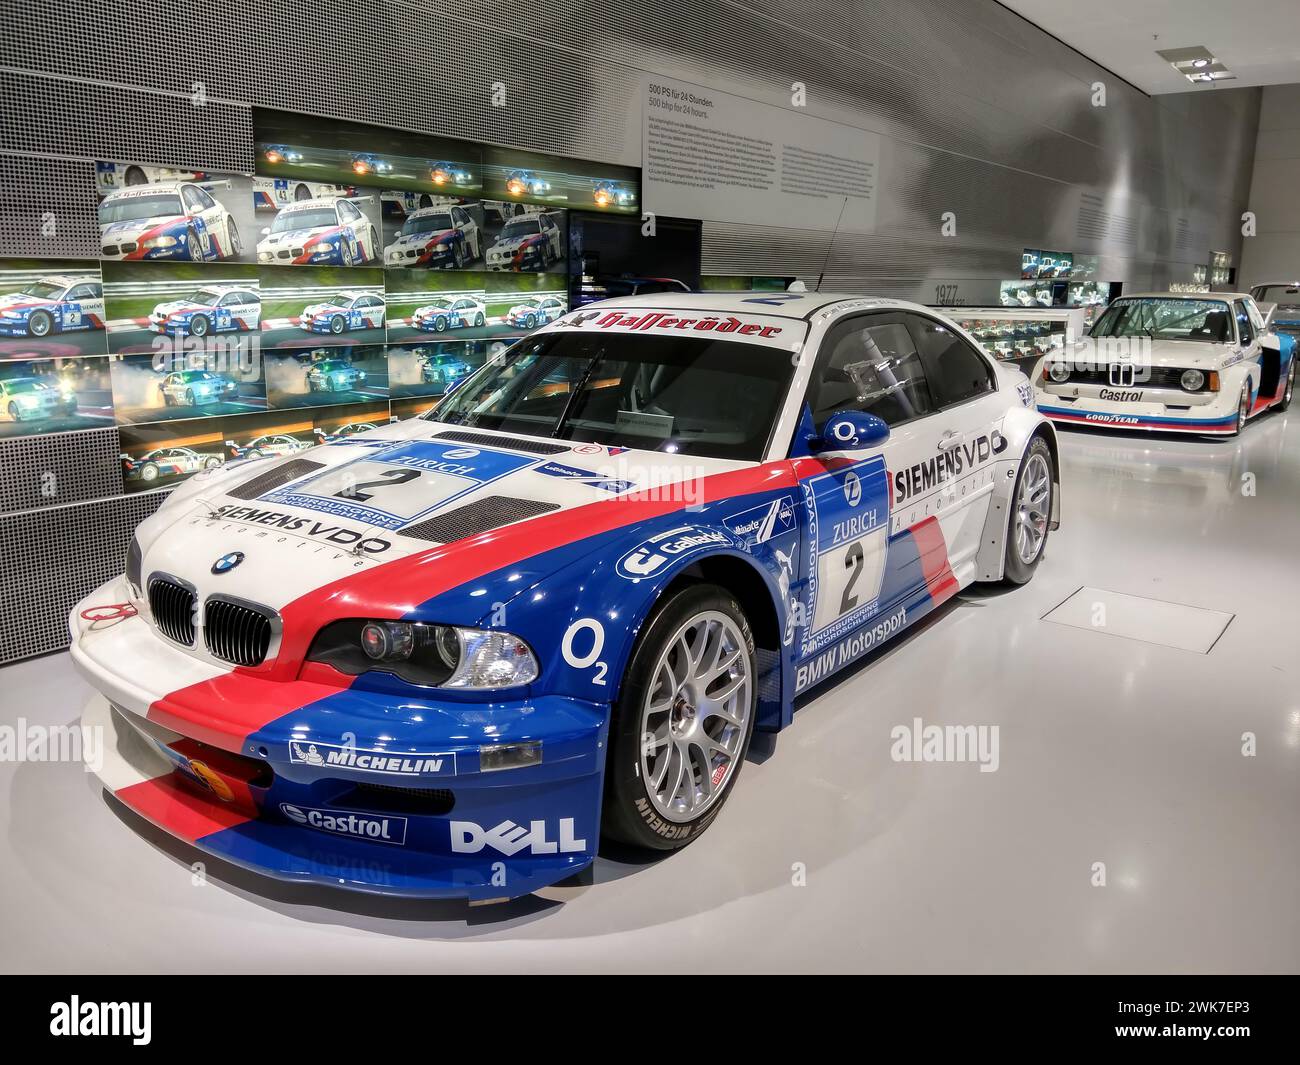 BMW racing car on display in a sleek showroom Stock Photo